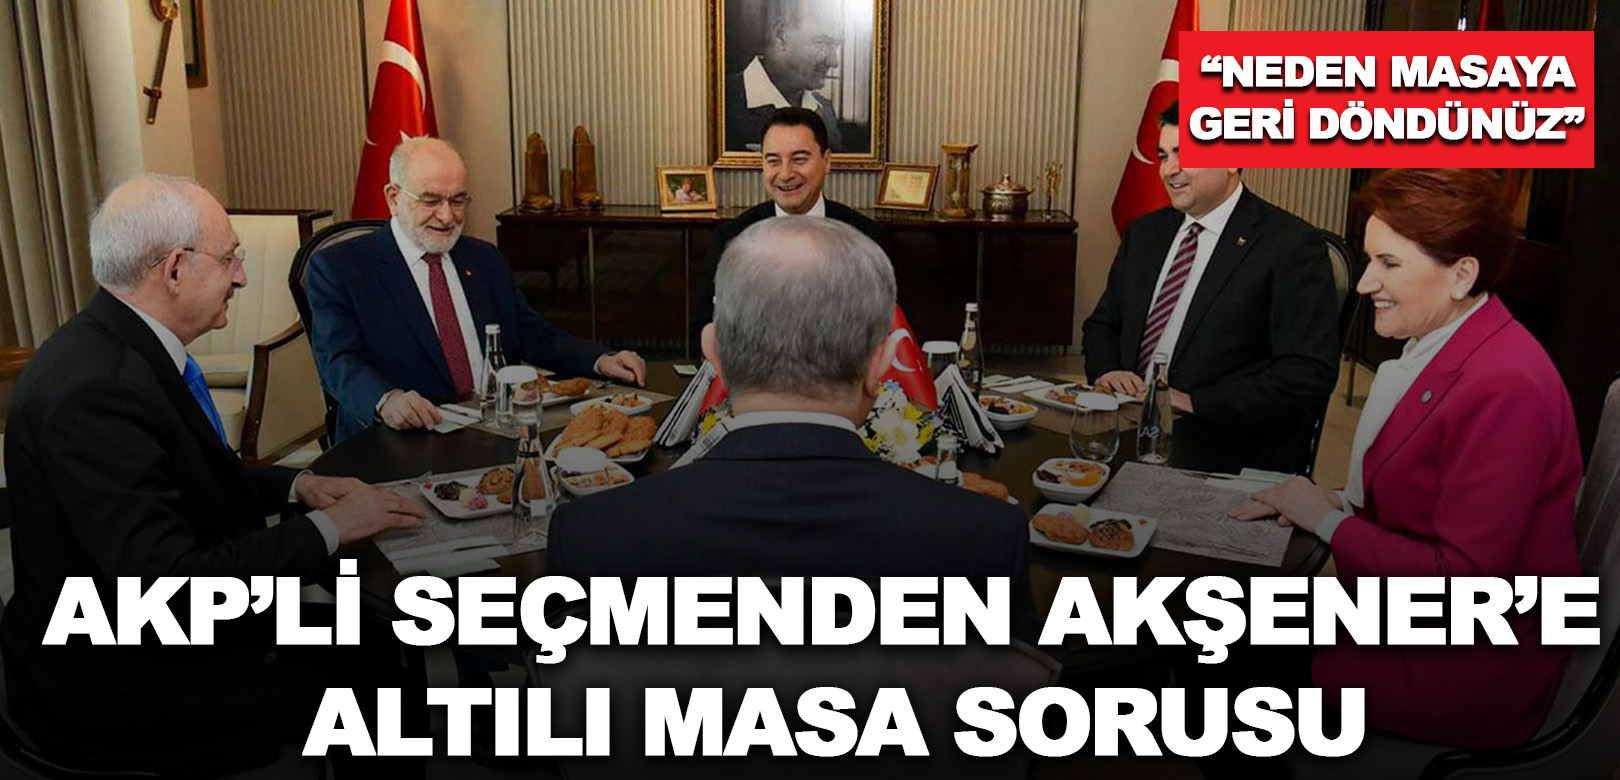 AKP’li seçmenden Akşener’e Altılı Masa sorusu: Neden masaya geri döndünüz